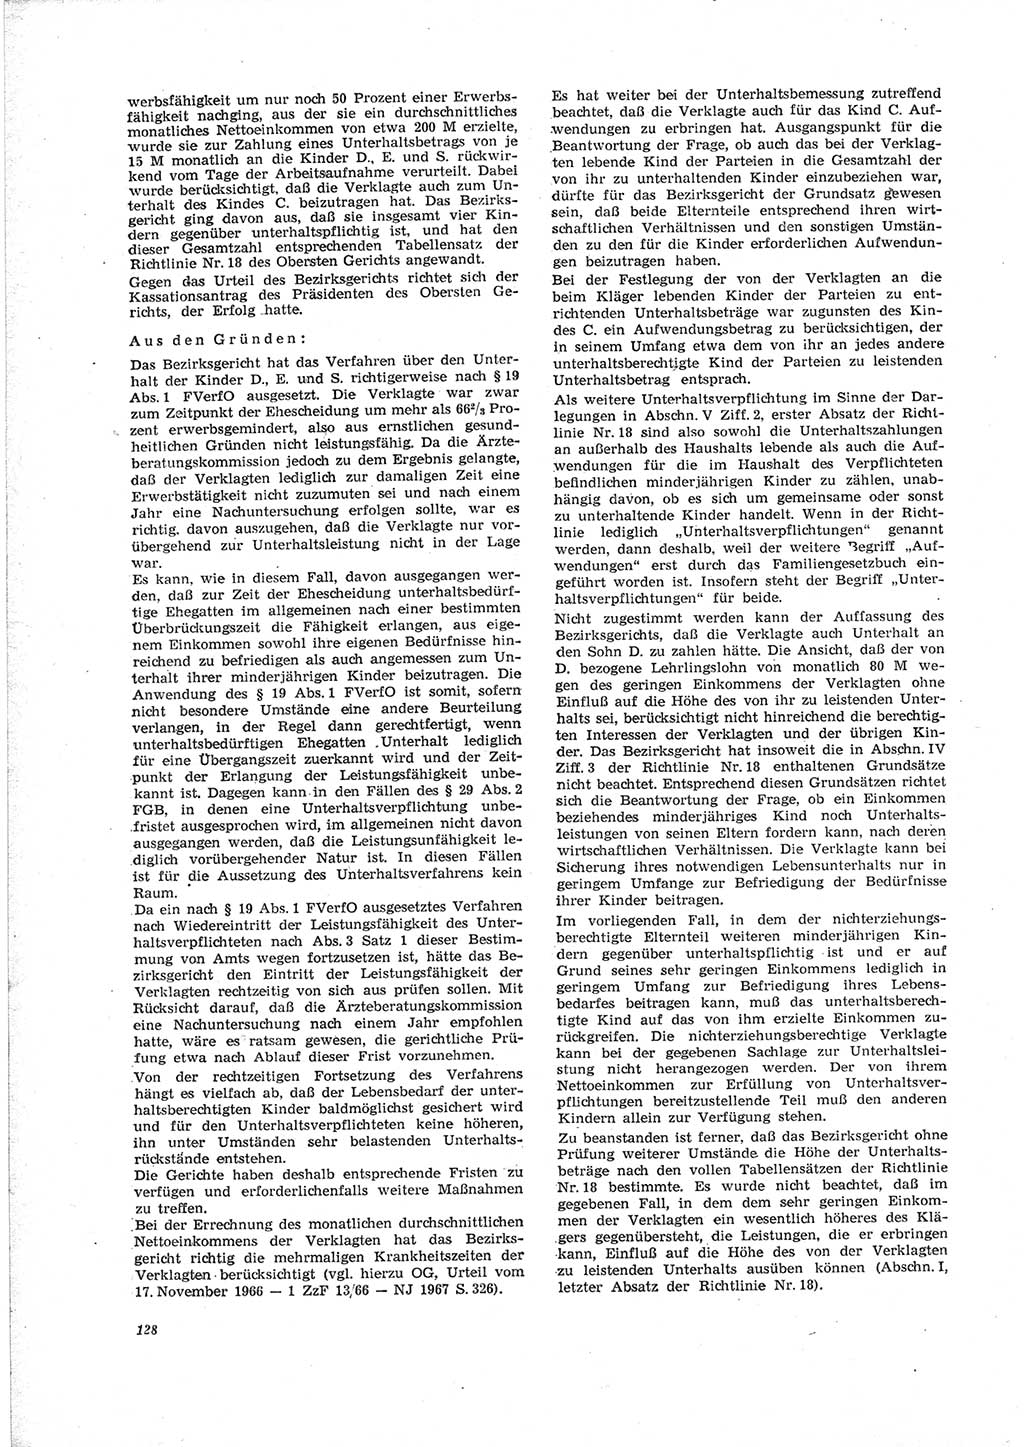 Neue Justiz (NJ), Zeitschrift für Recht und Rechtswissenschaft [Deutsche Demokratische Republik (DDR)], 23. Jahrgang 1969, Seite 128 (NJ DDR 1969, S. 128)